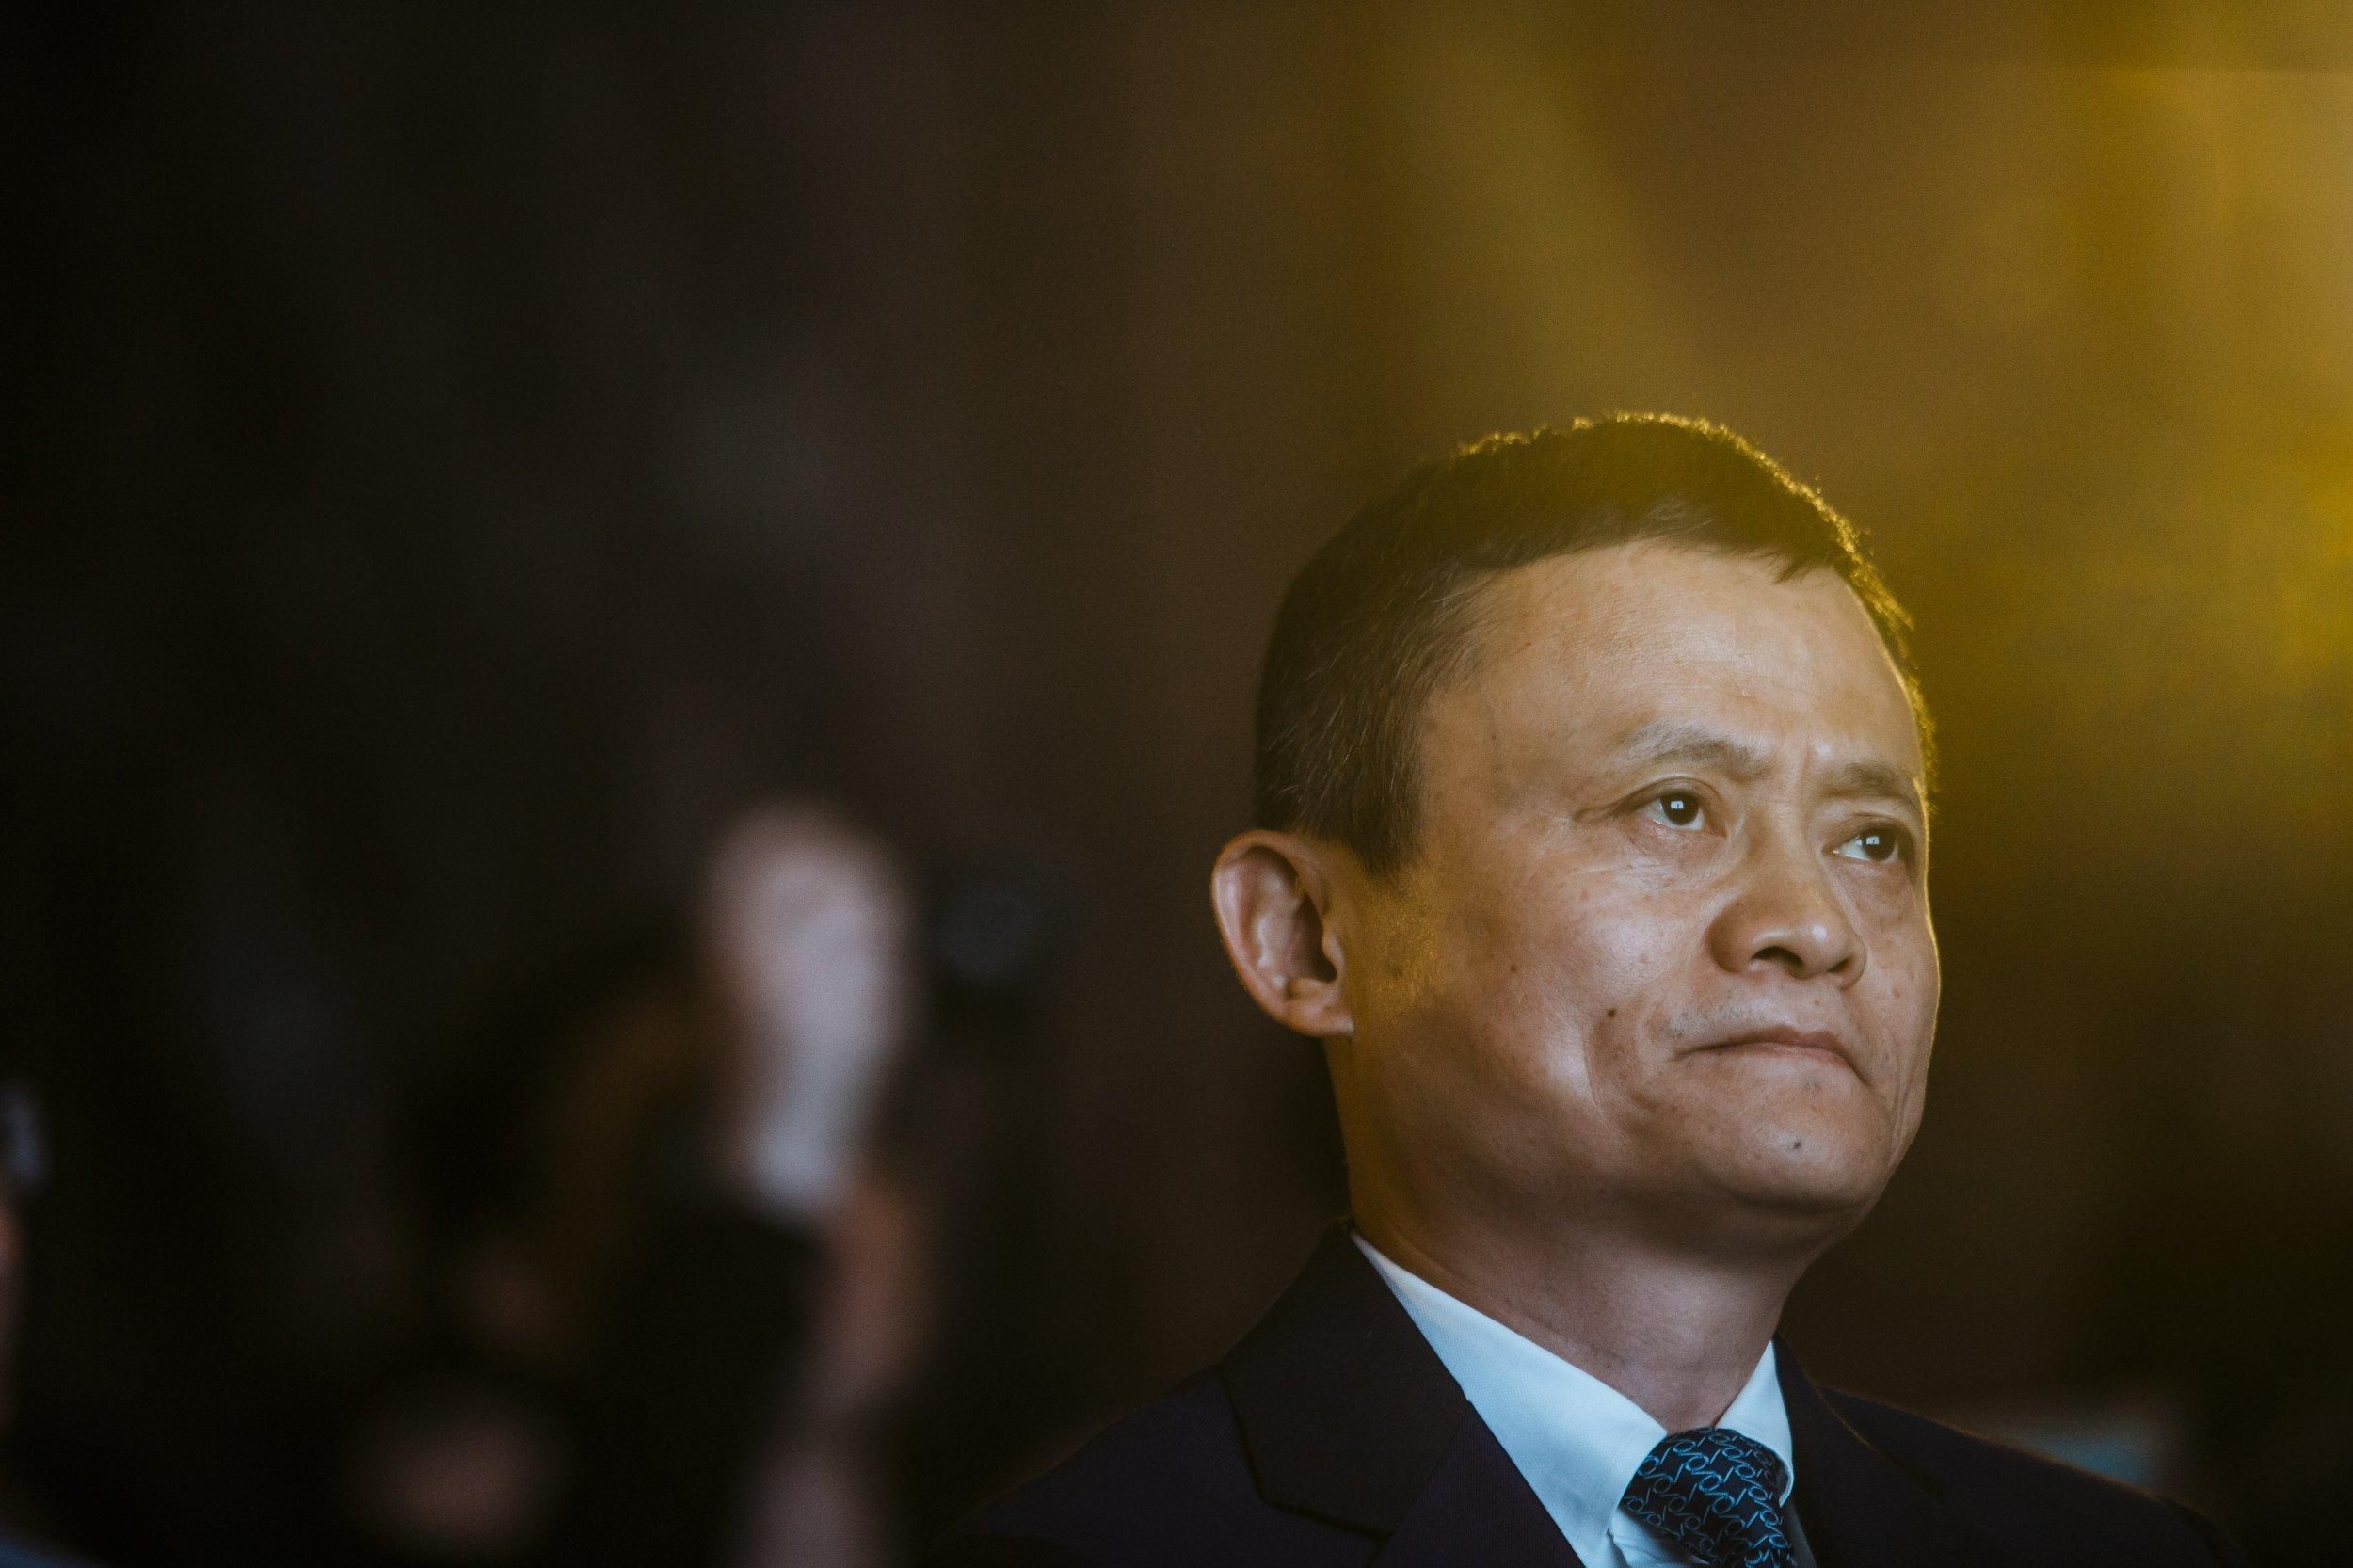 Мільярдер Джек Ма неочікувано з'явився у Європі: як це вплинуло на позиції Alibaba - Фінанси